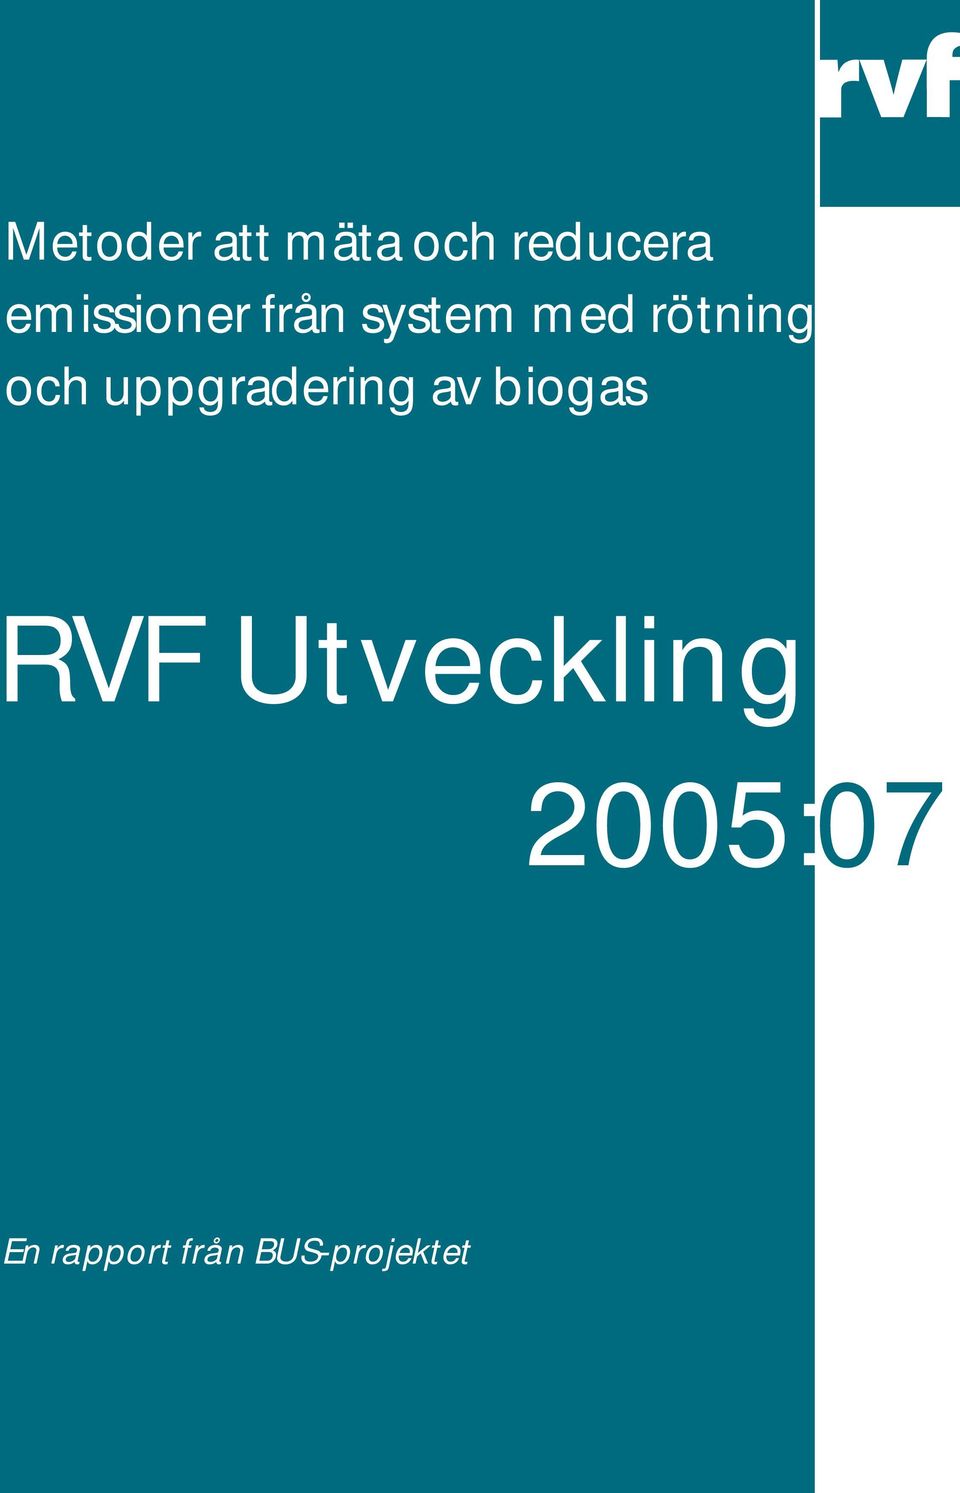 och uppgradering av biogas RVF